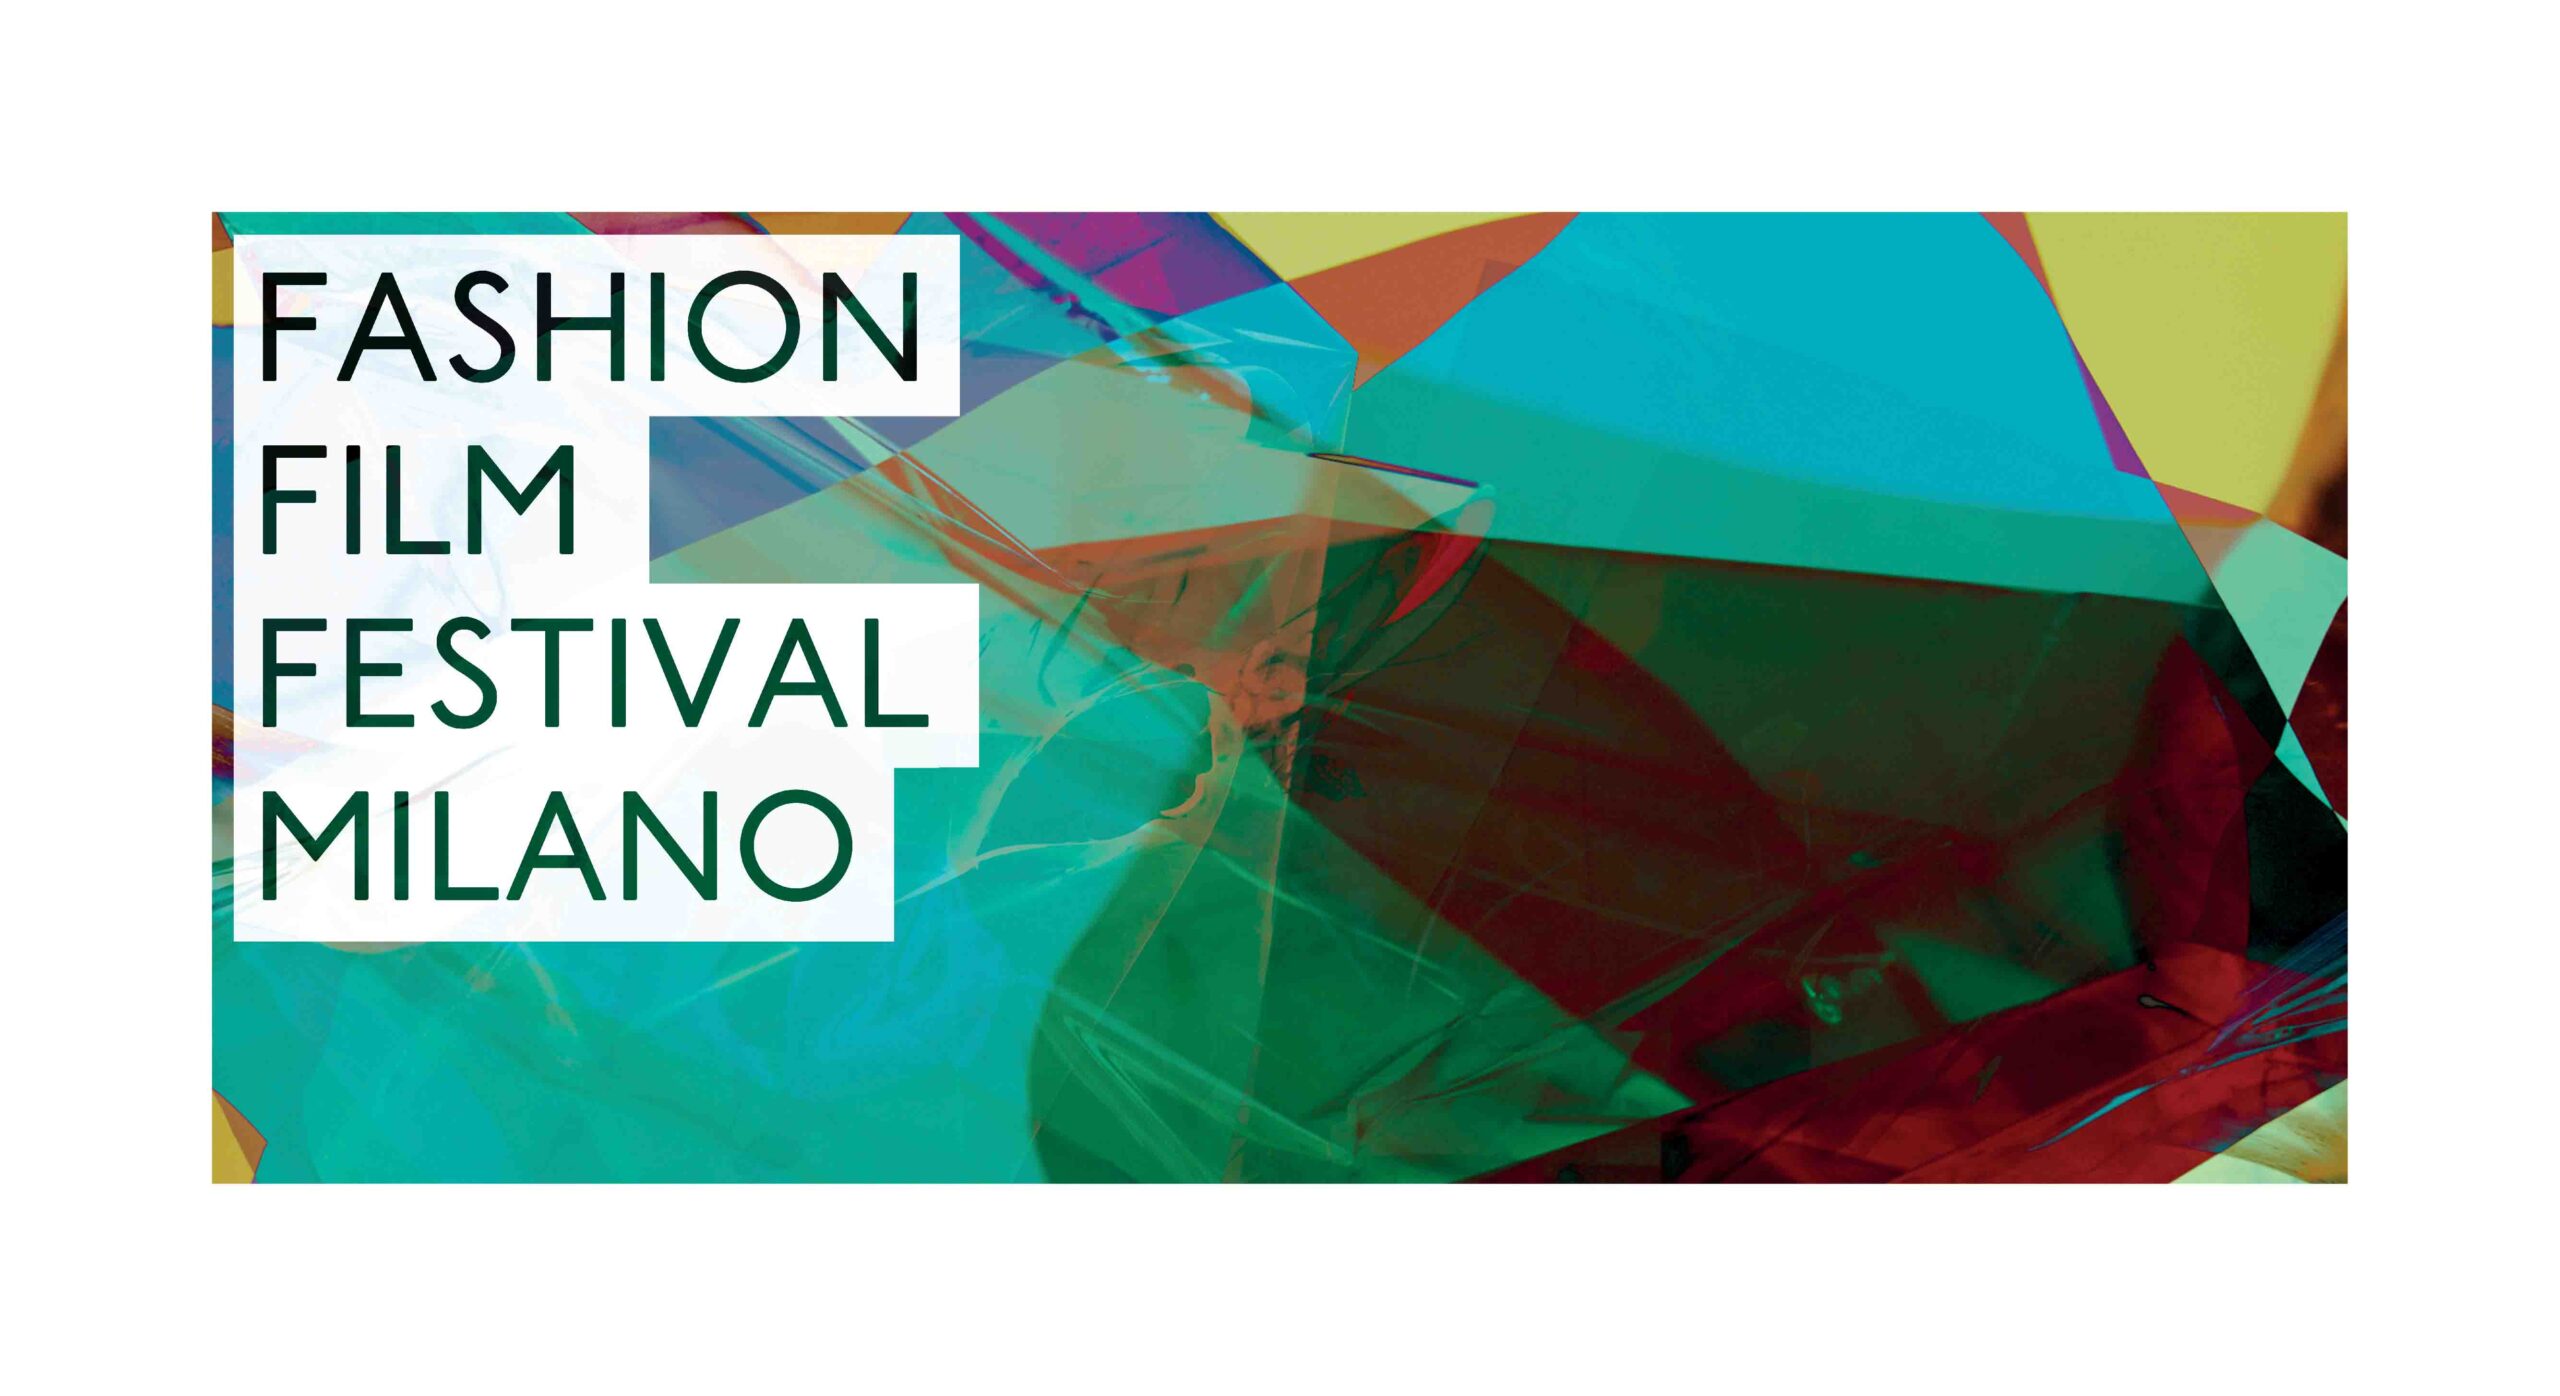 Fashion Film Festival Milano 2016